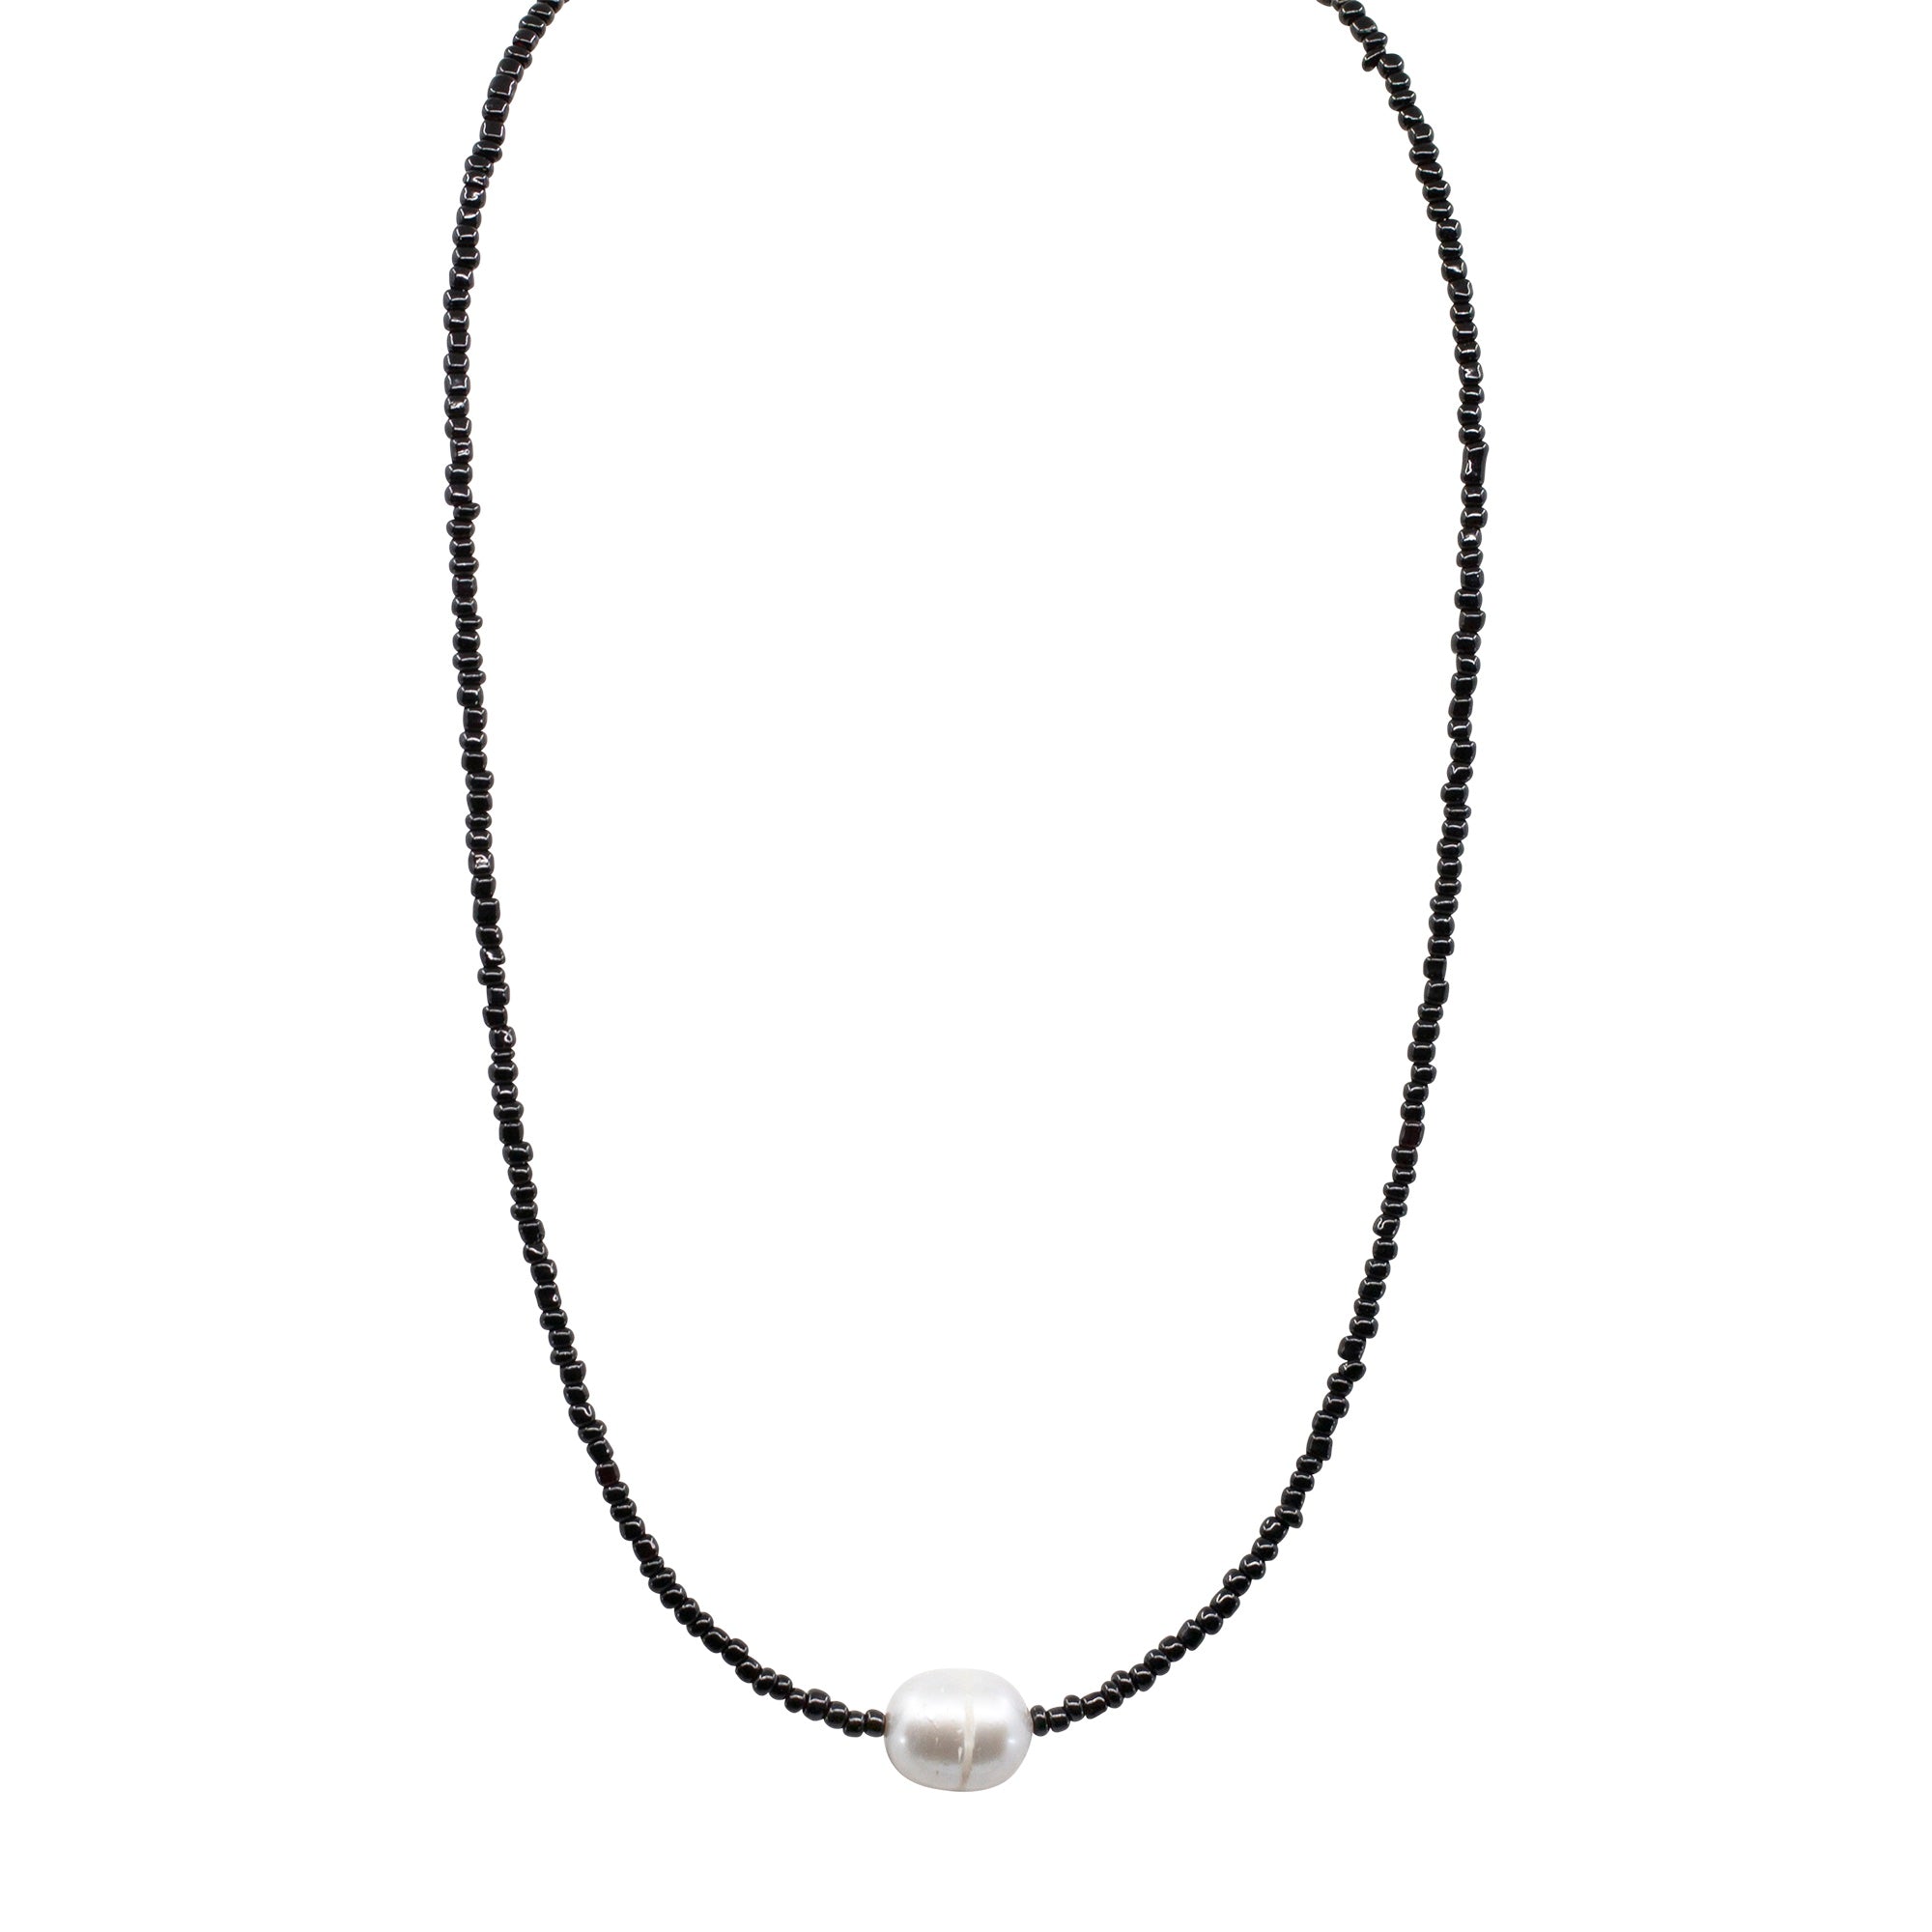 Oxidised pendant black thread with studs – House of Jhumkas